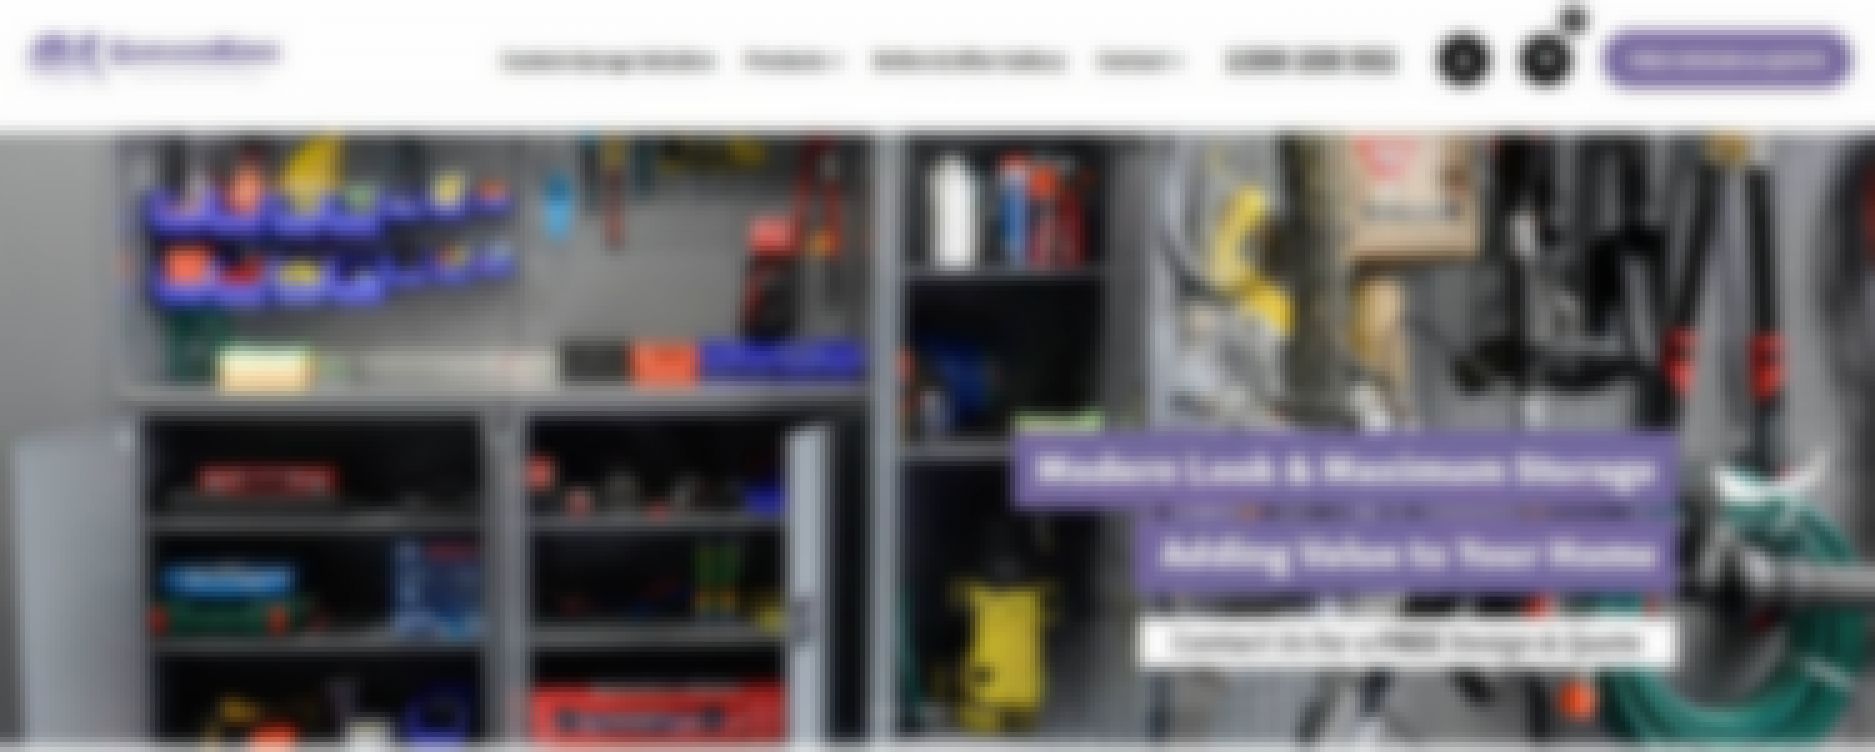 garageking storage cabinet solutions melbourne